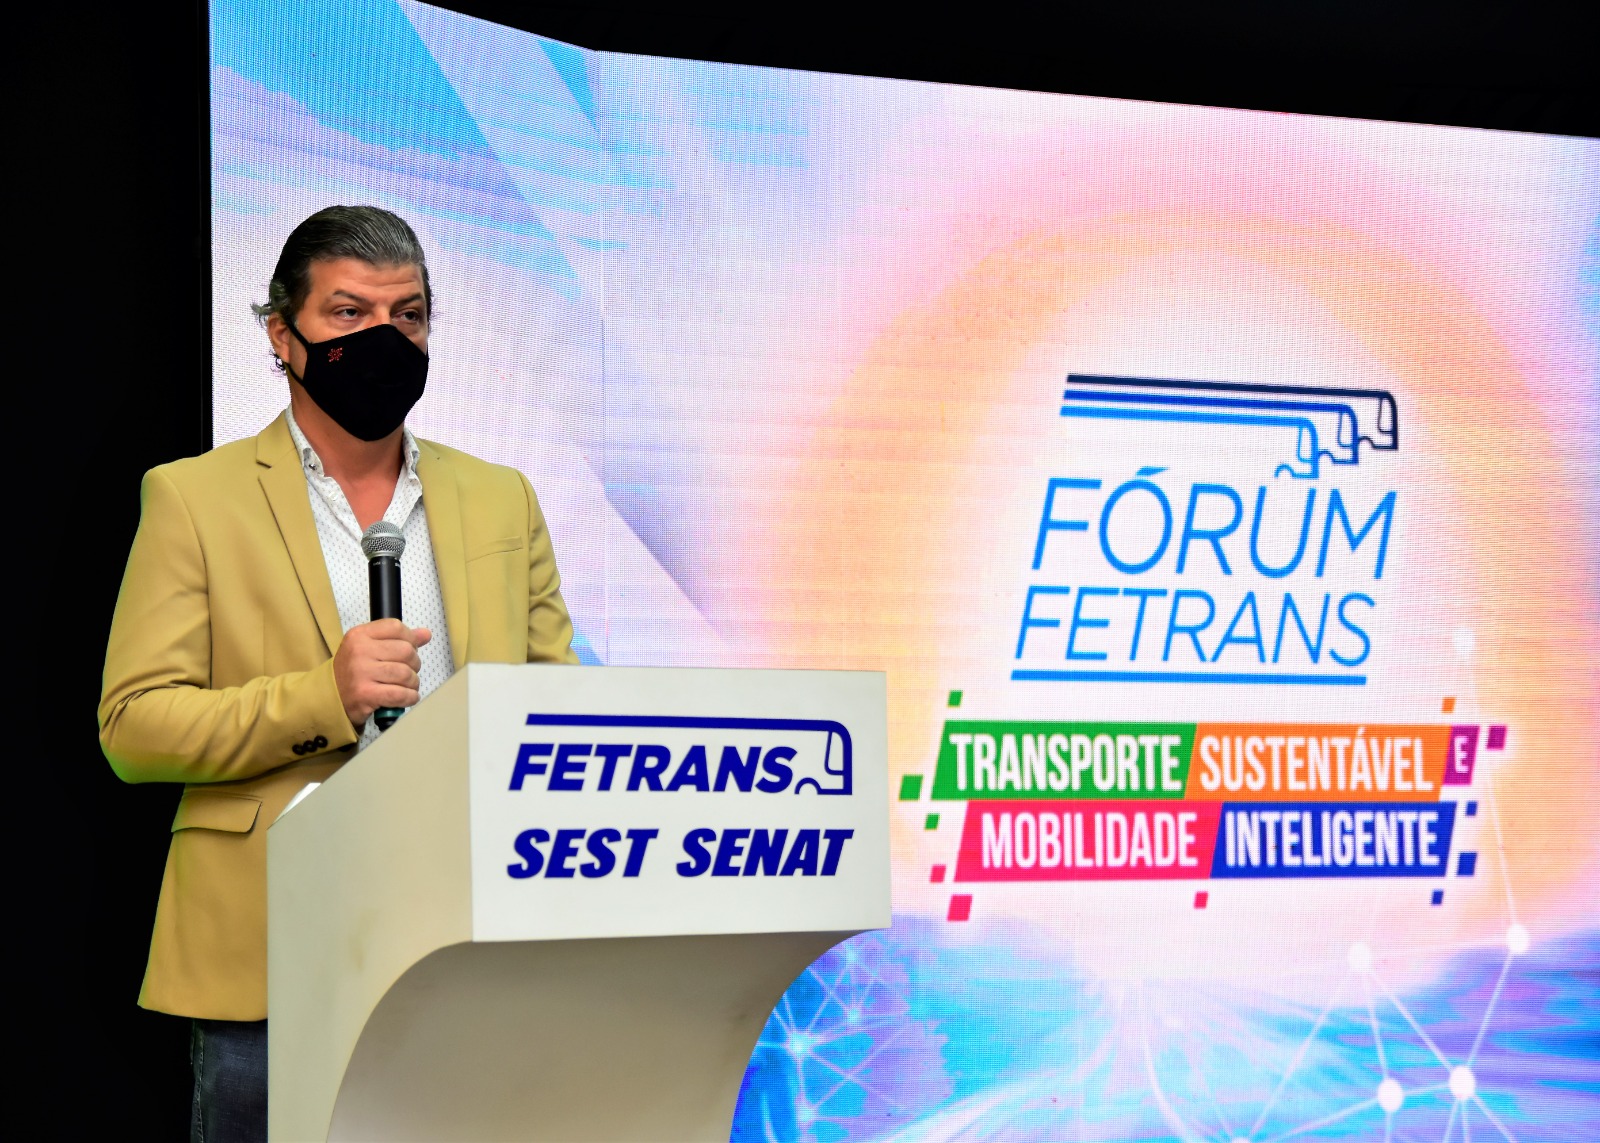 Fetrans e SEST SENAT Teresina promovem IV Fórum Fetrans na capital do Piauí